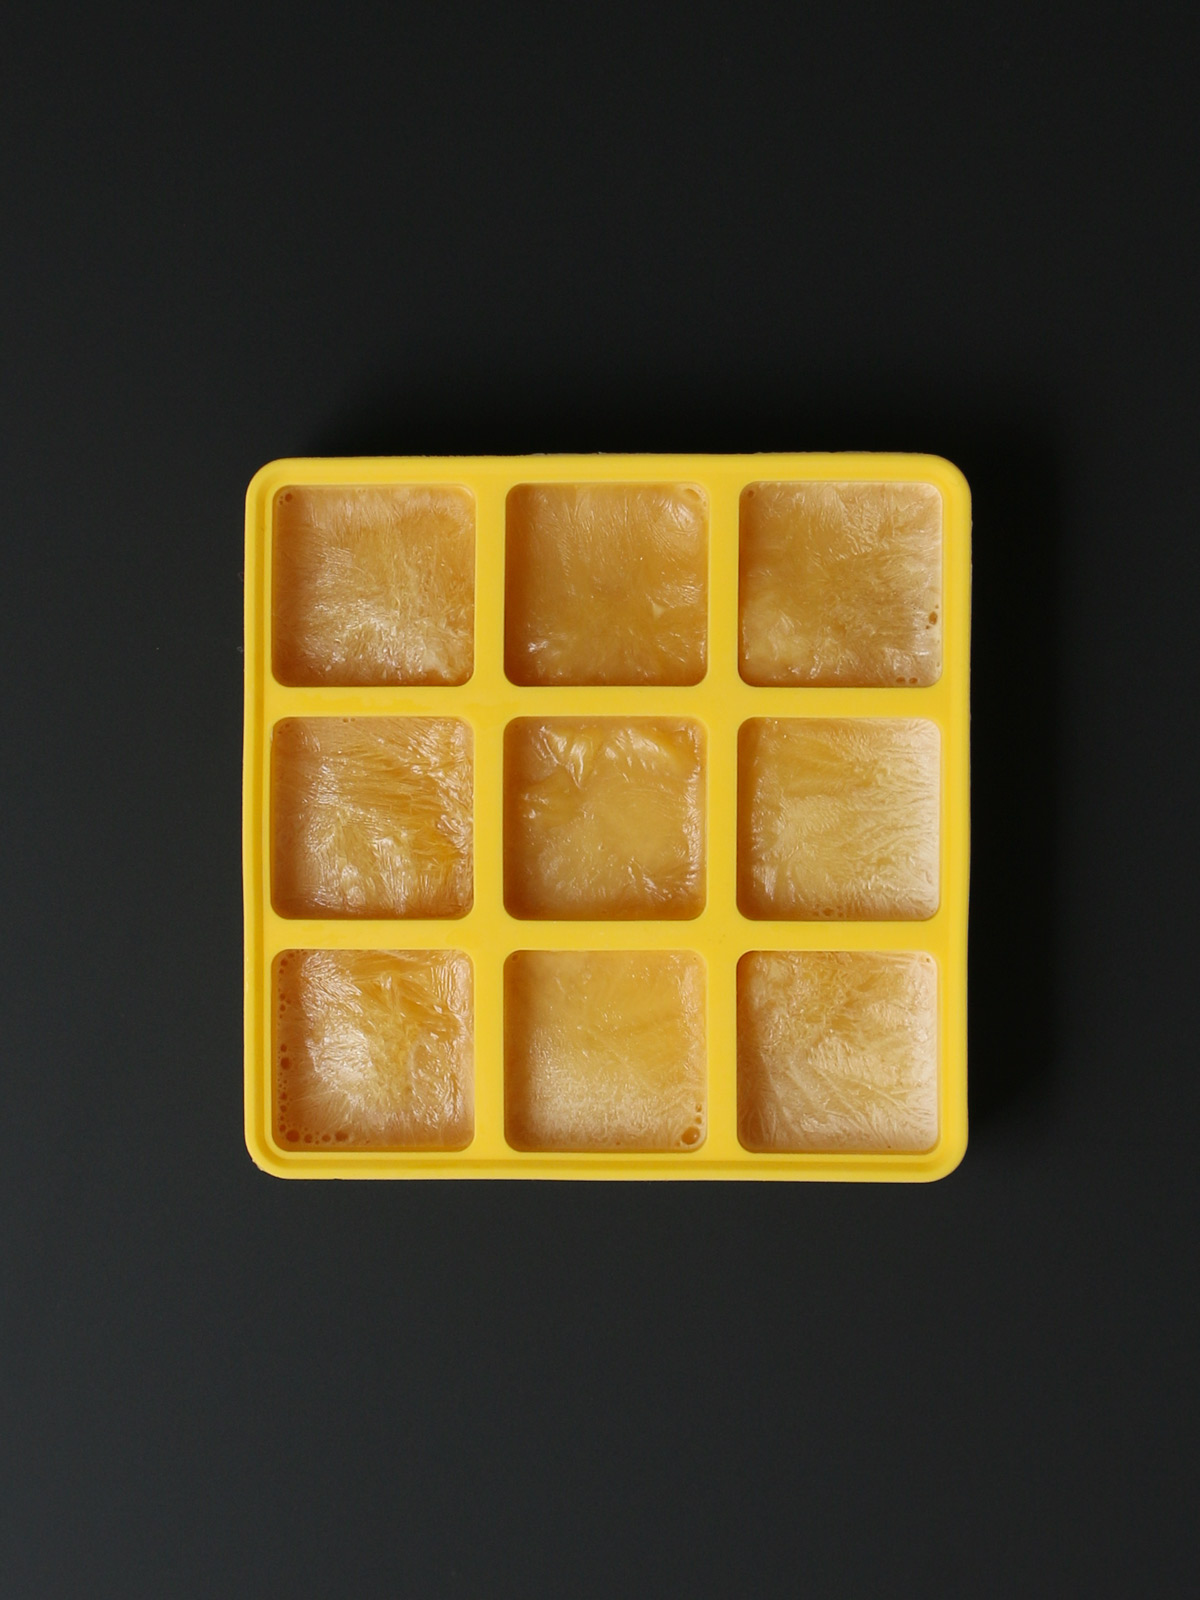 frozen cubes of evaporated milk.